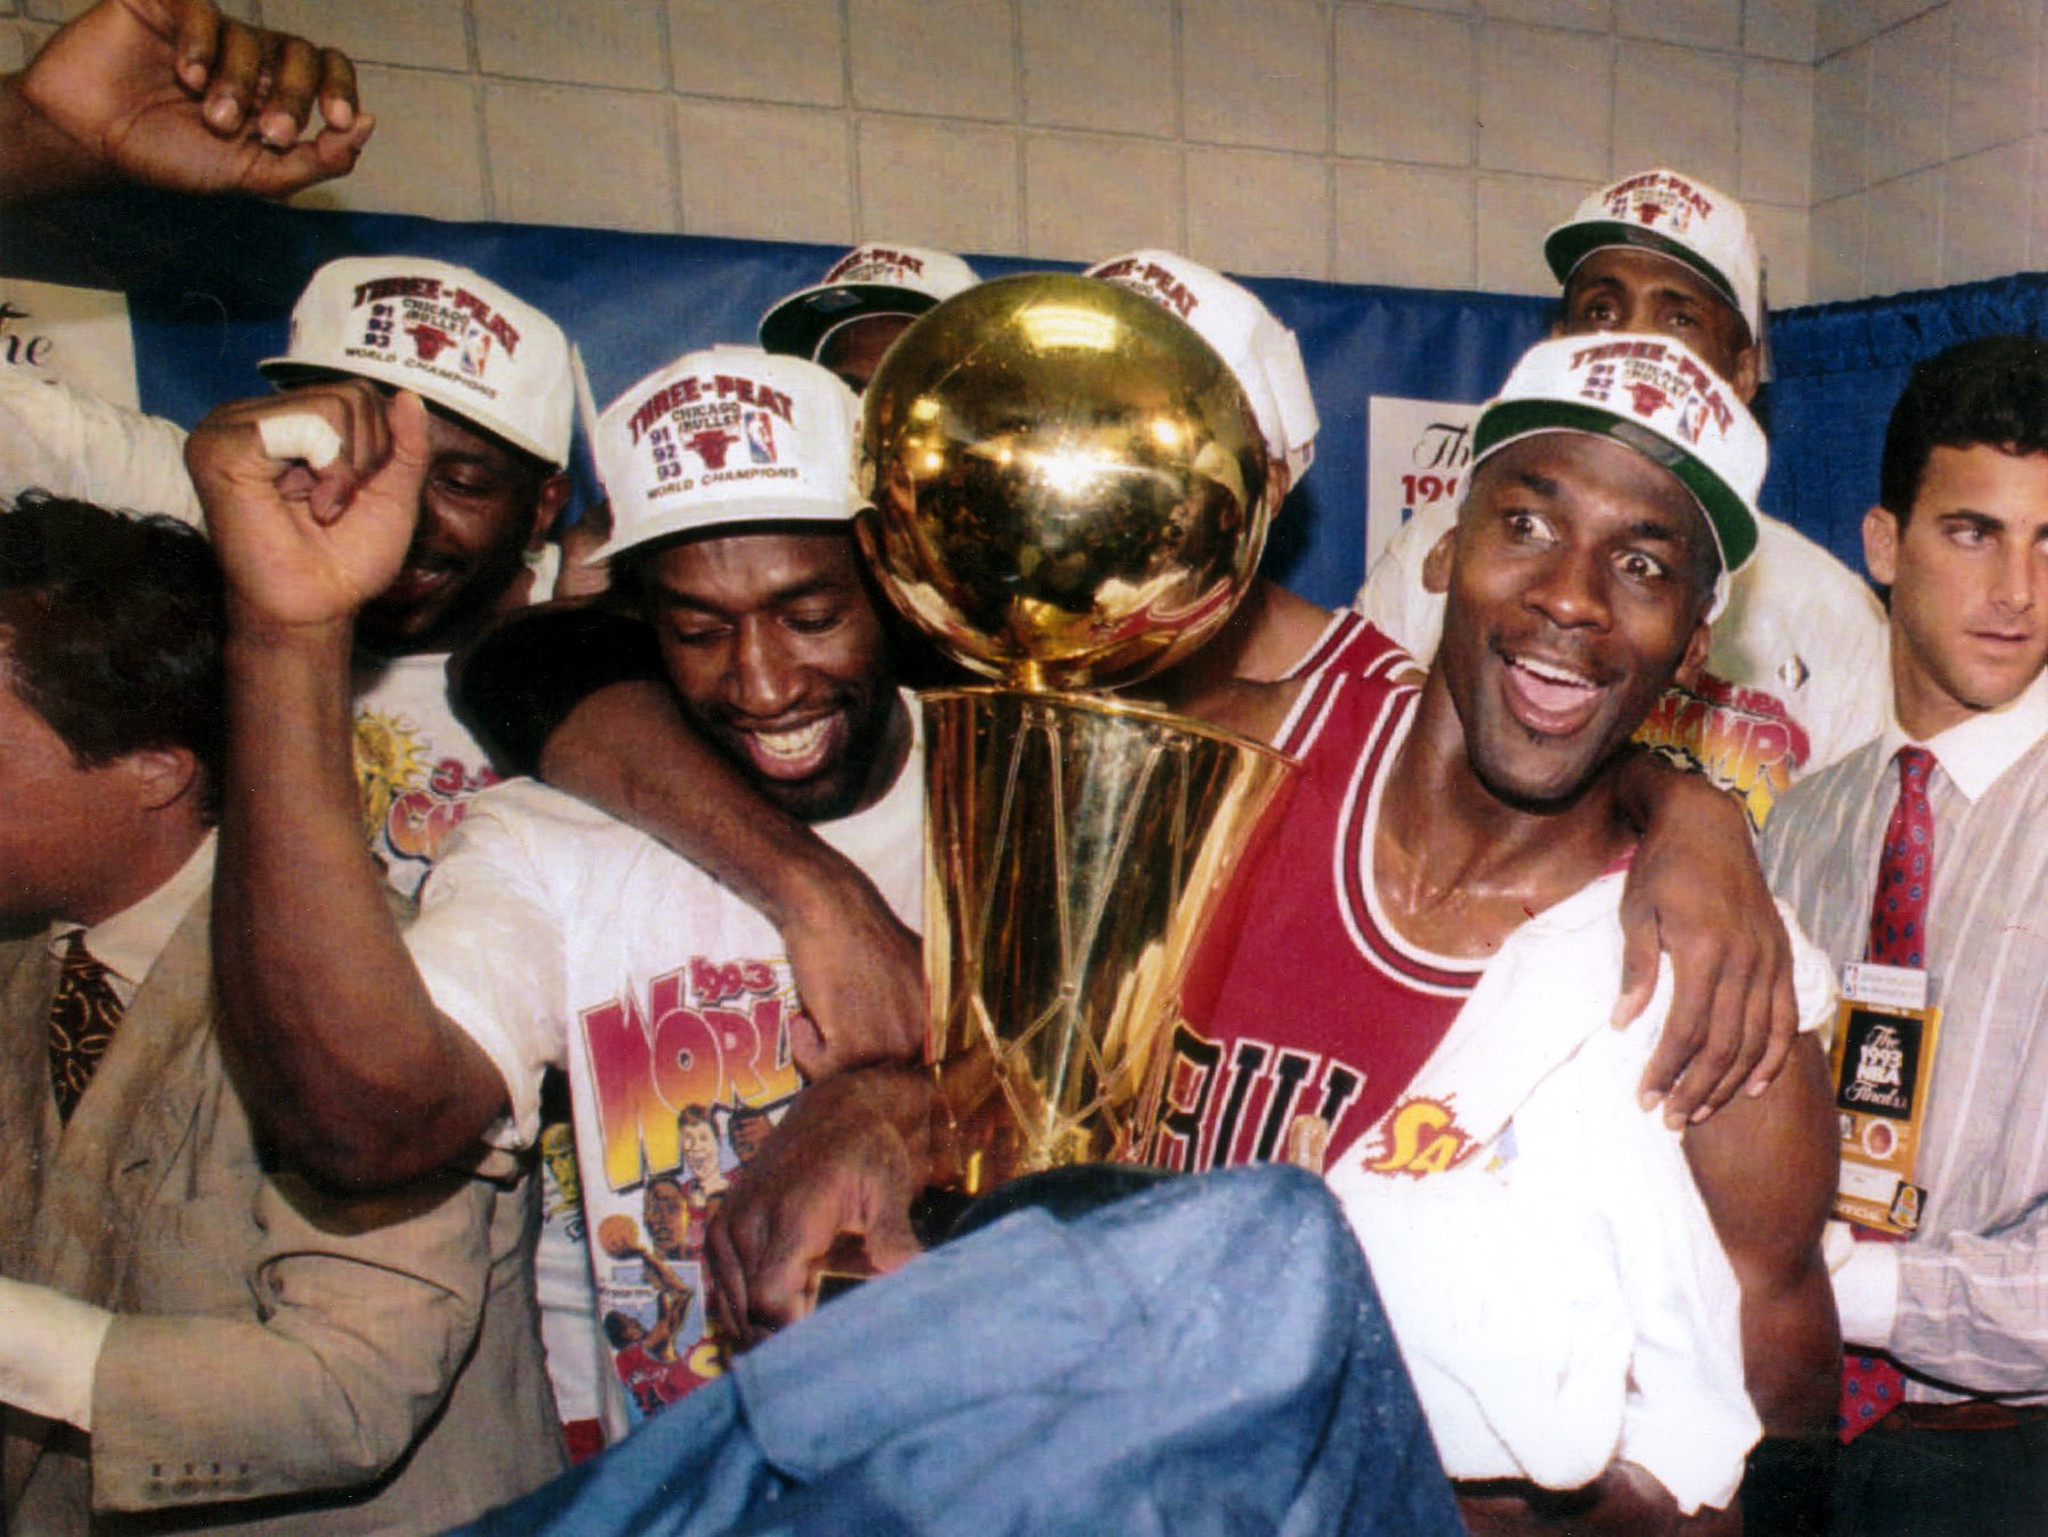 Michael Jordan's third NBA season - 1987 Playoffs through Finals